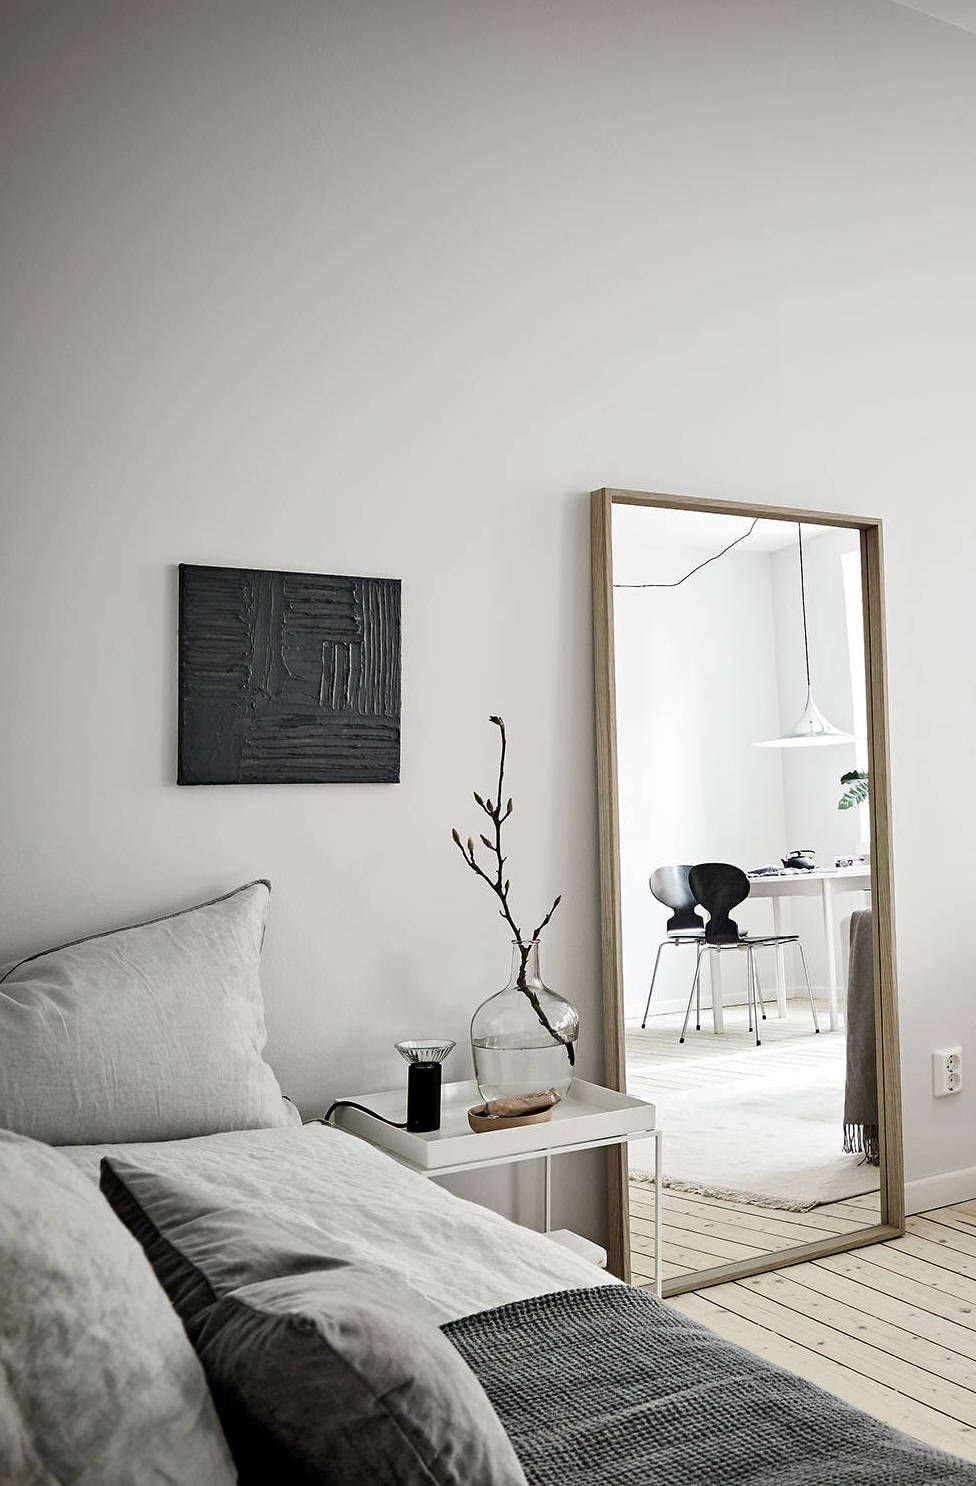 Salon son sofa gris suelo de tablones de madera y espejo apoyado en la pared